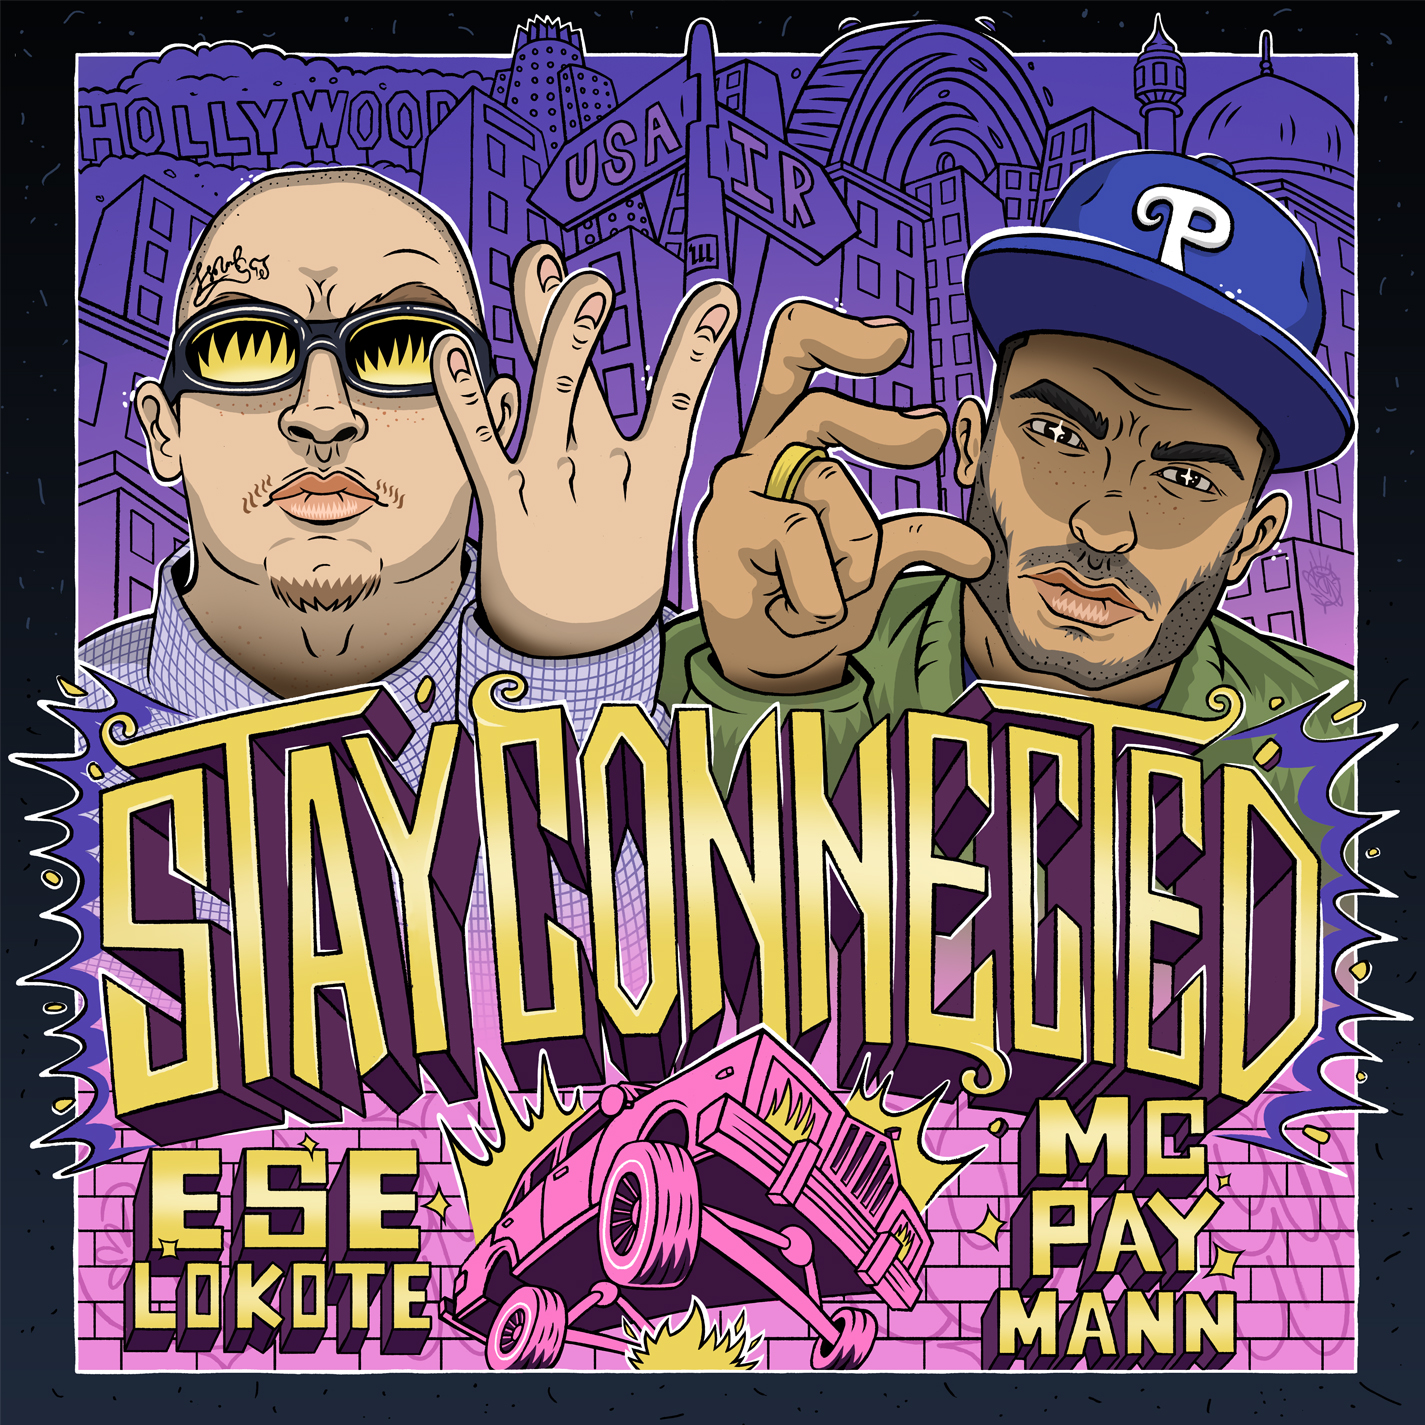 دانلود موزیک جدید و بسیار زیبای Mc Pay Mann و Ese Lokote به نام Stay Connected